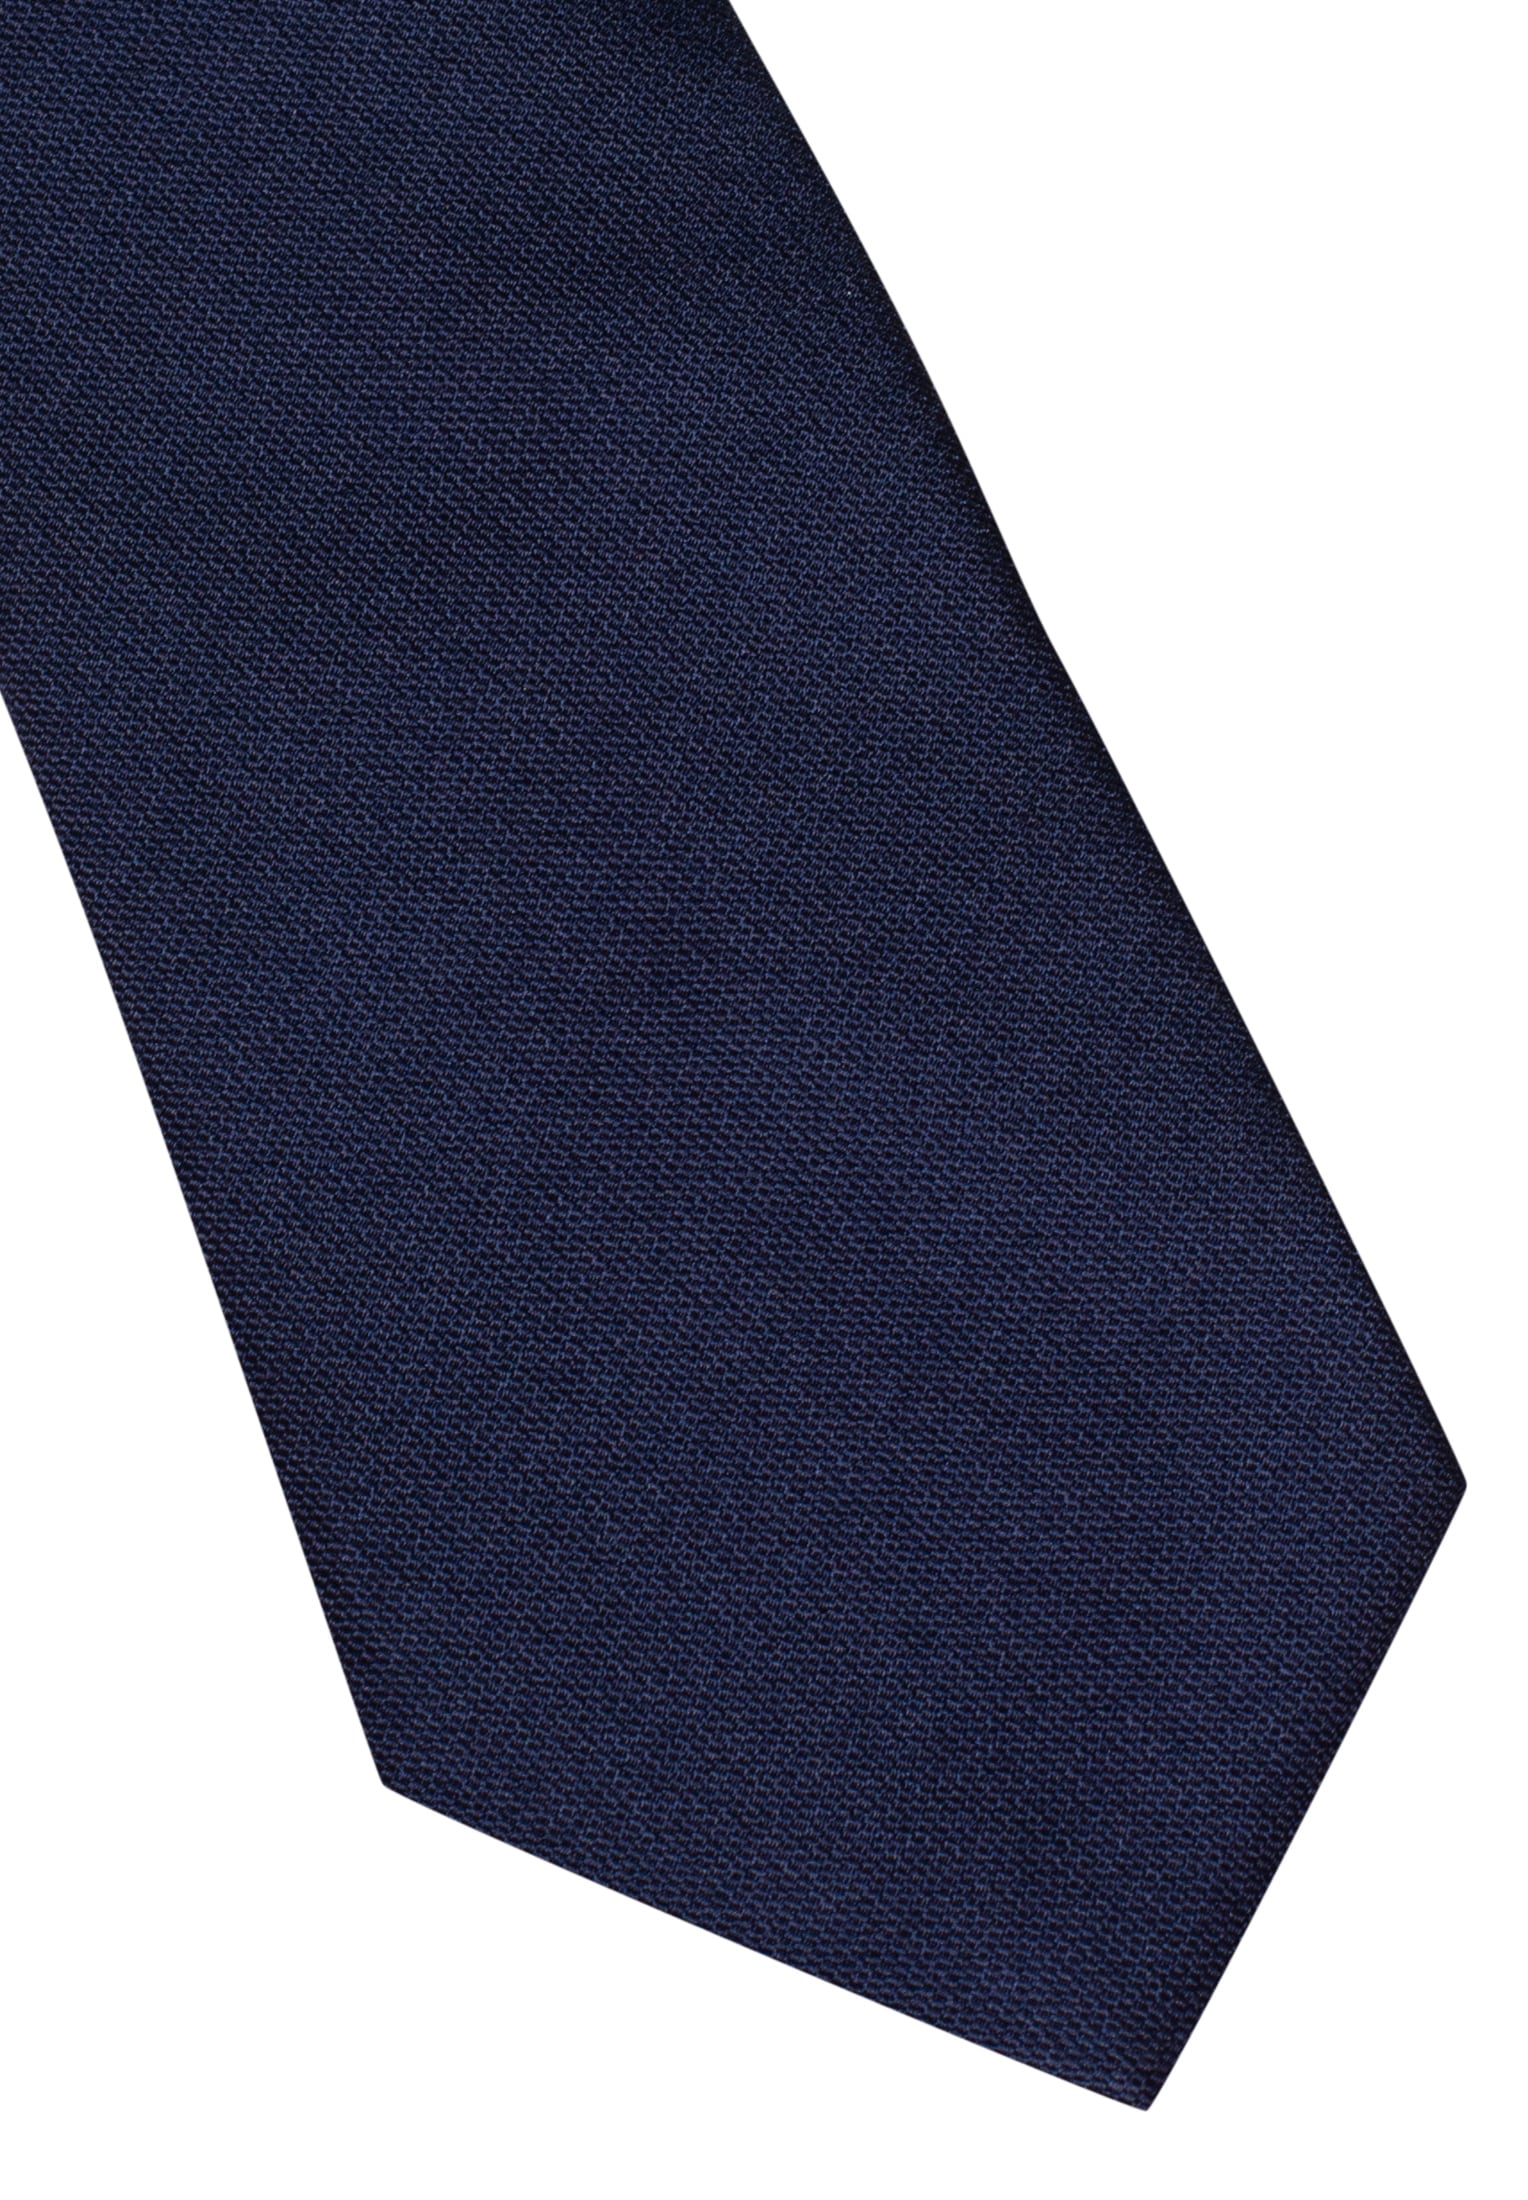 Krawatte in navy unifarben | 142 navy | | 1AC00020-01-91-142